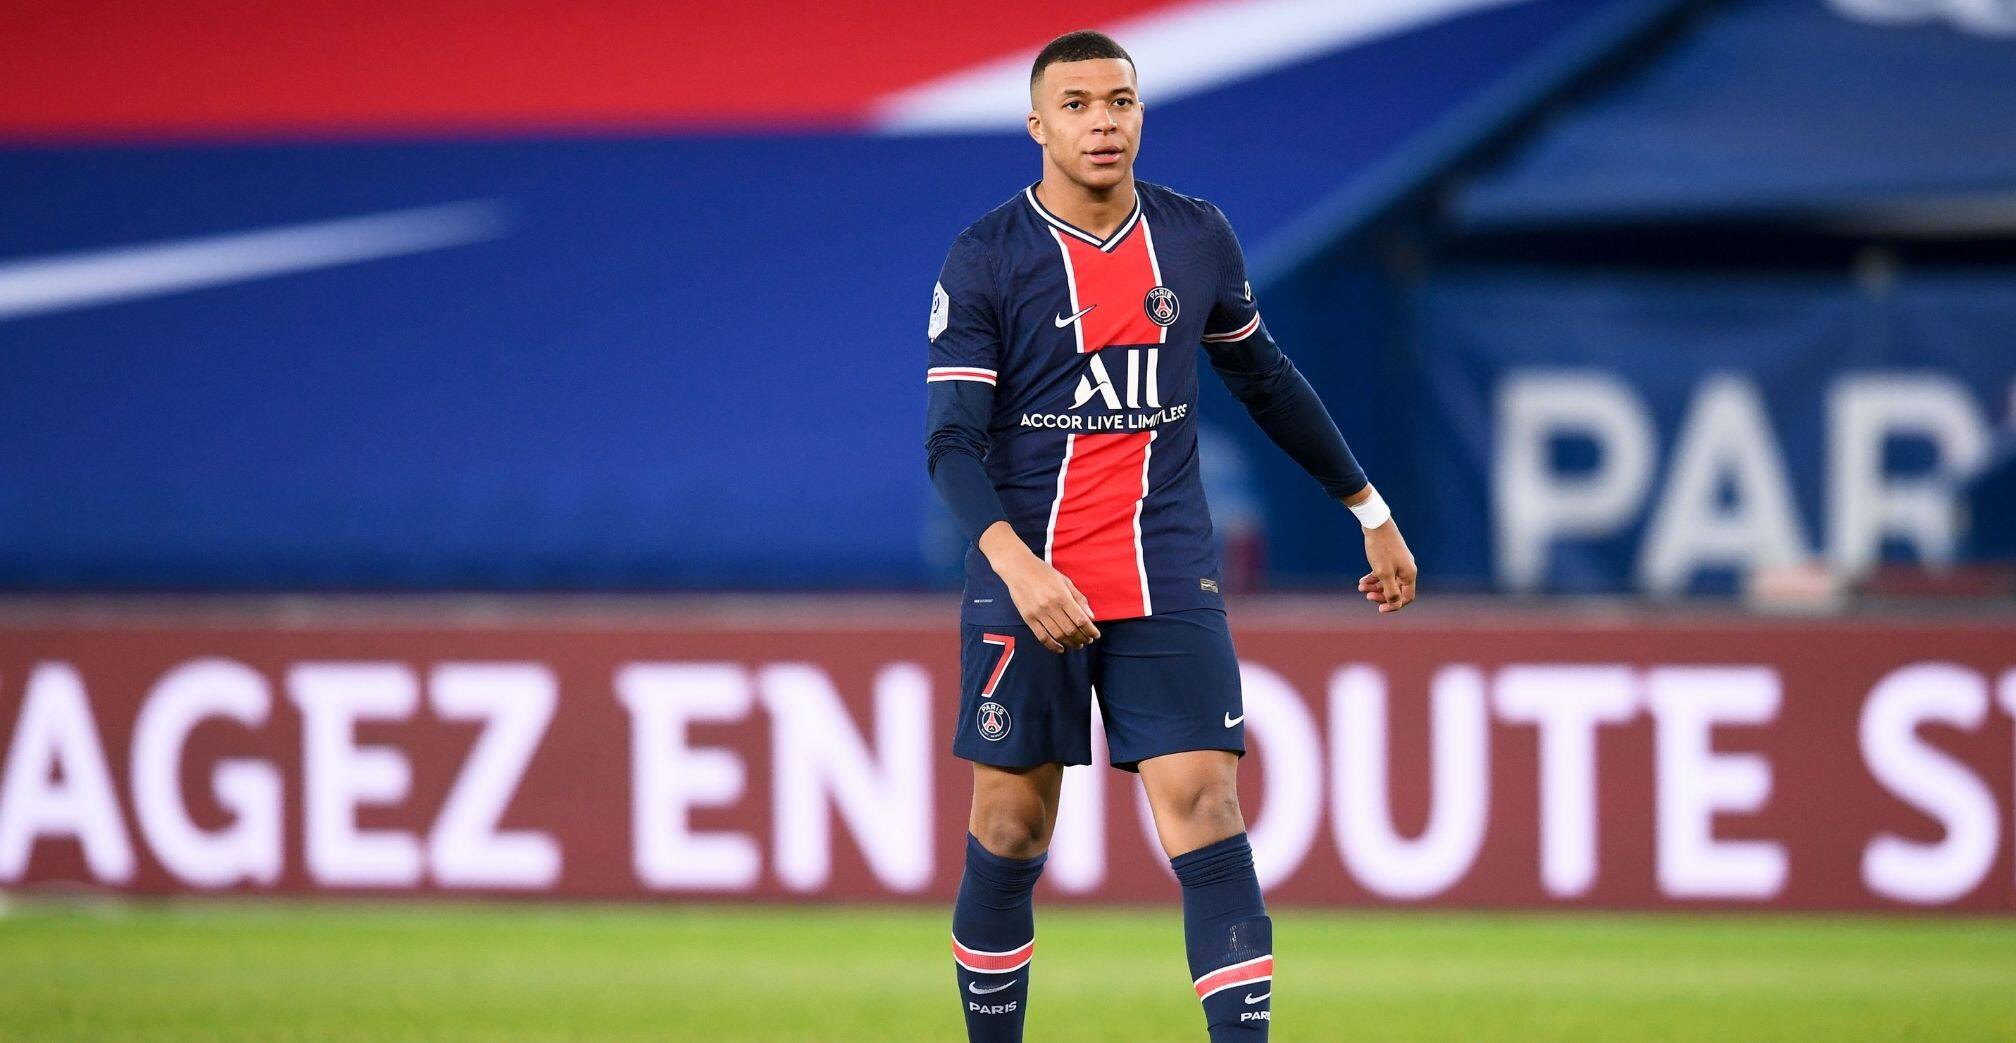 Ligue 1 top scorer for the third consecutive season